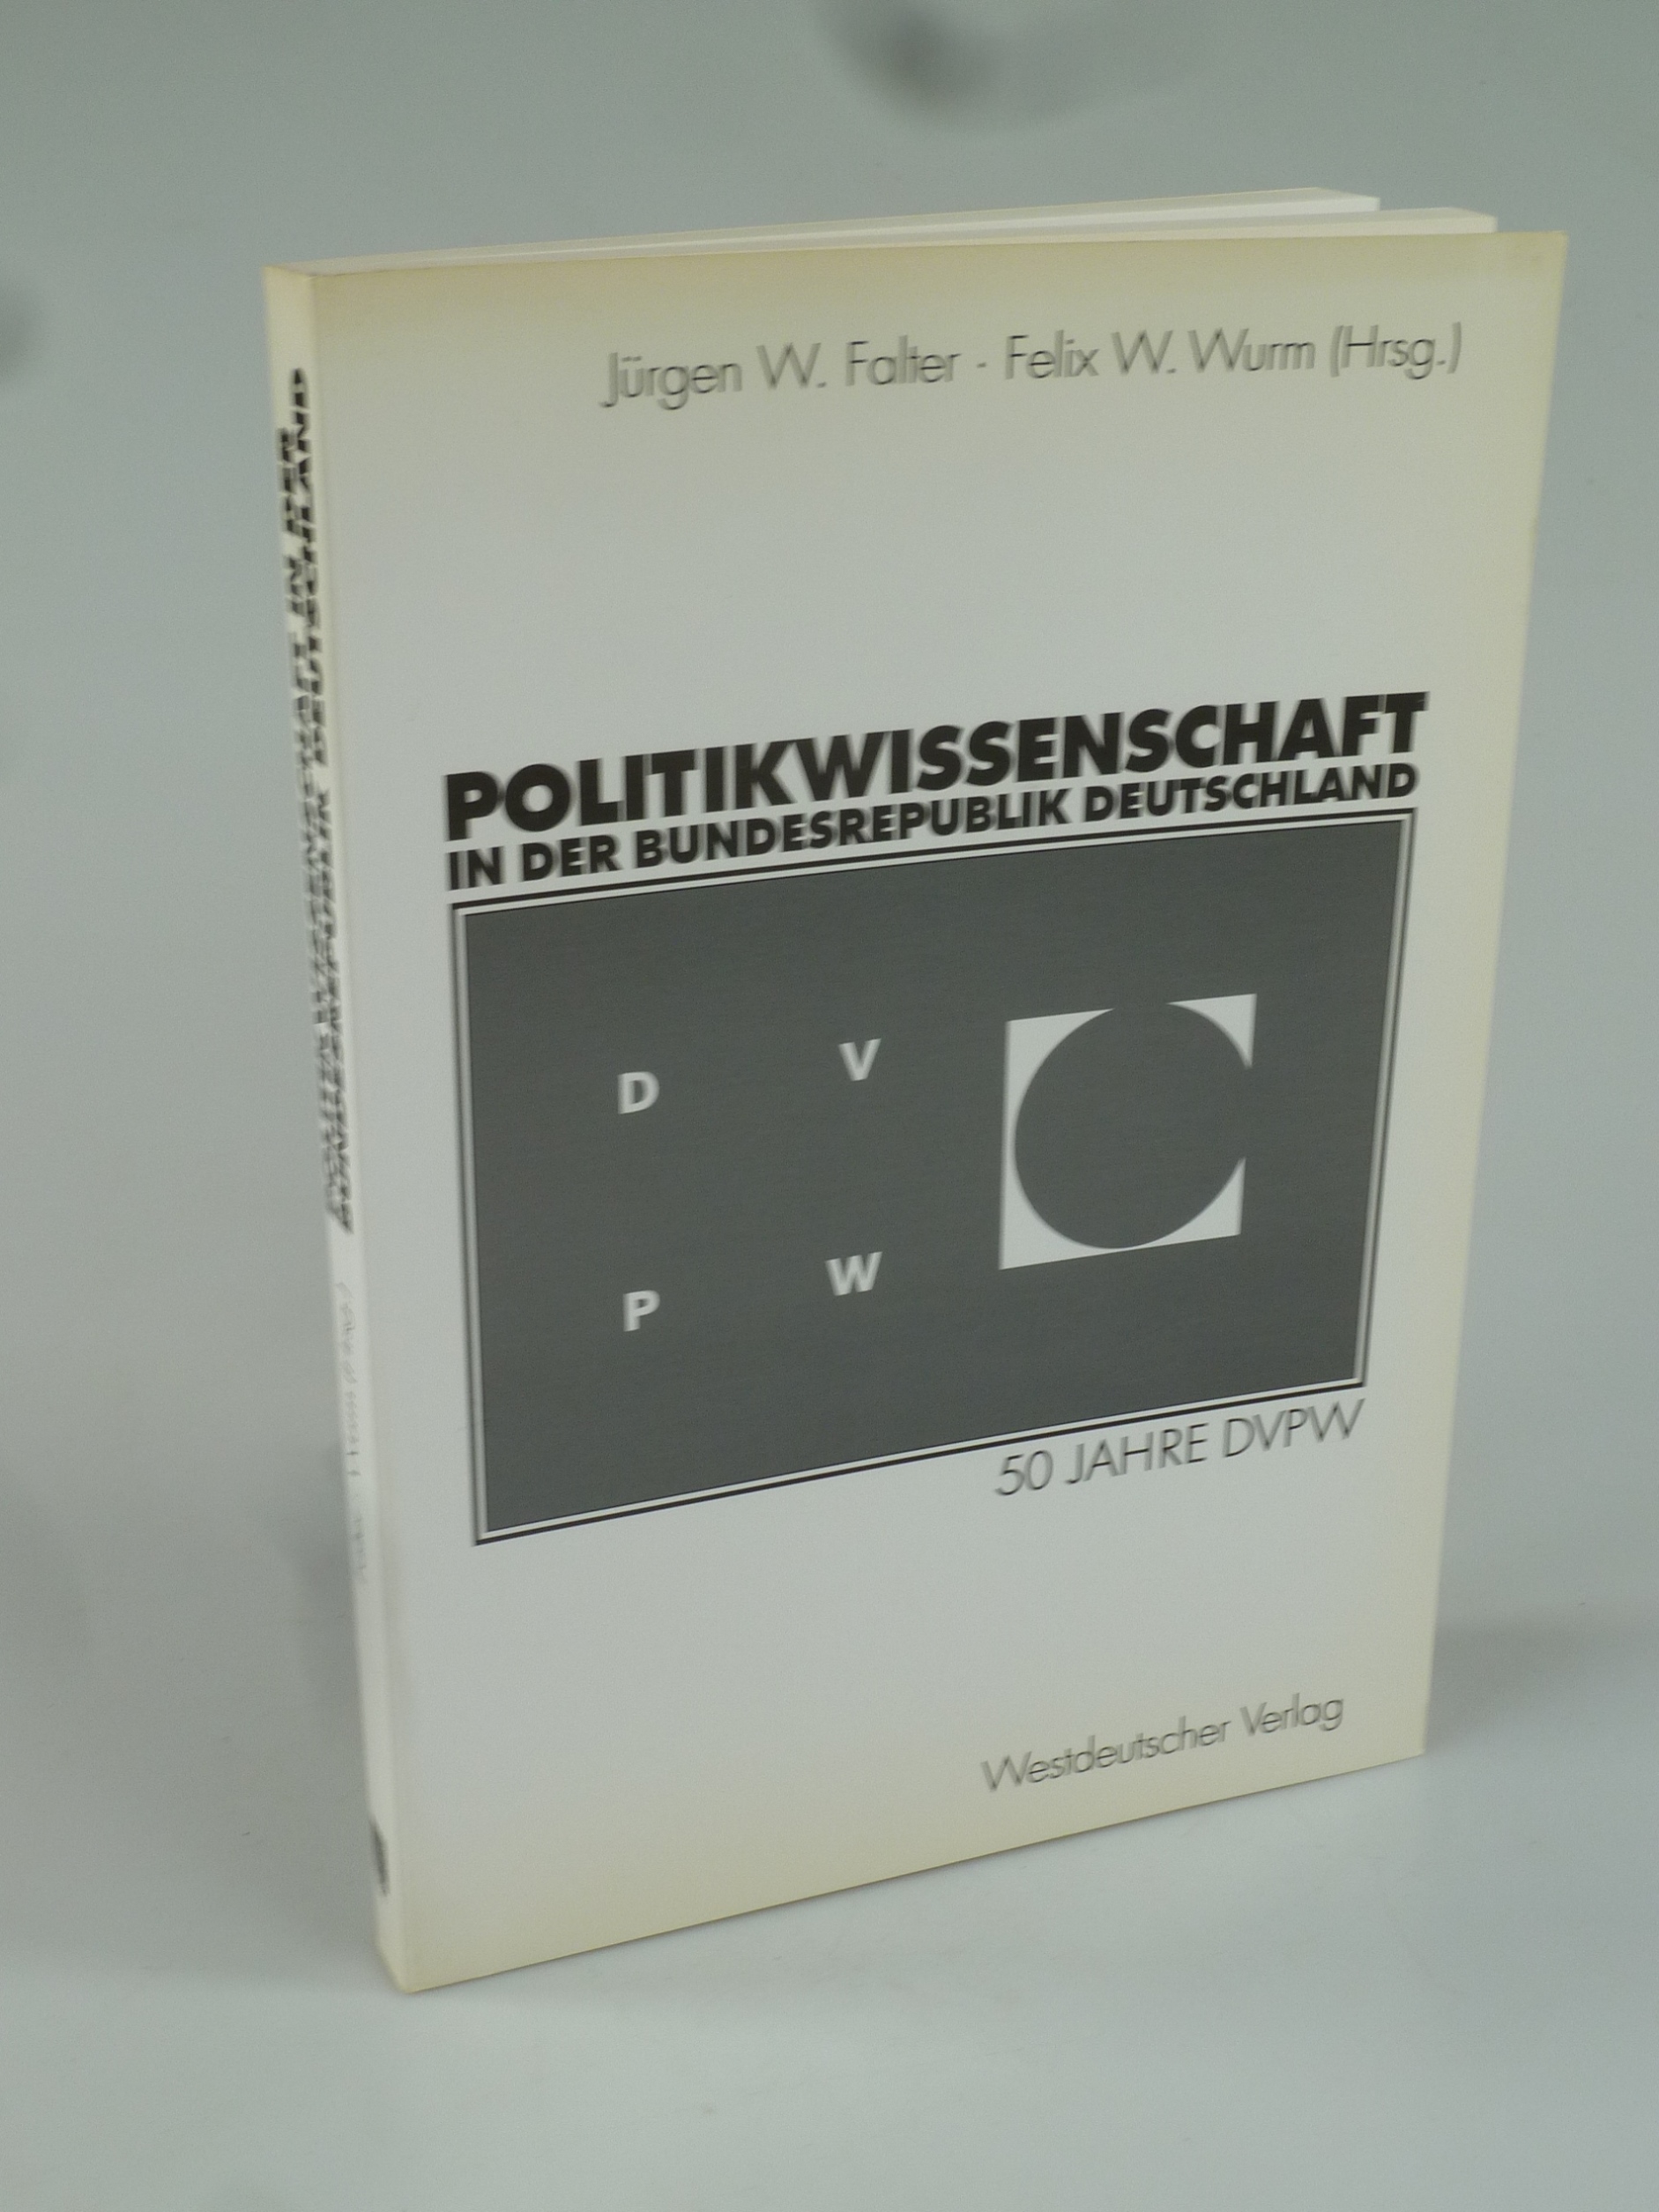 Politikwissenschaft in der Bundesrepublik Deutschland. - FALTER, JÜRGEN W. U. FELIX W. WURM (HRSG.).